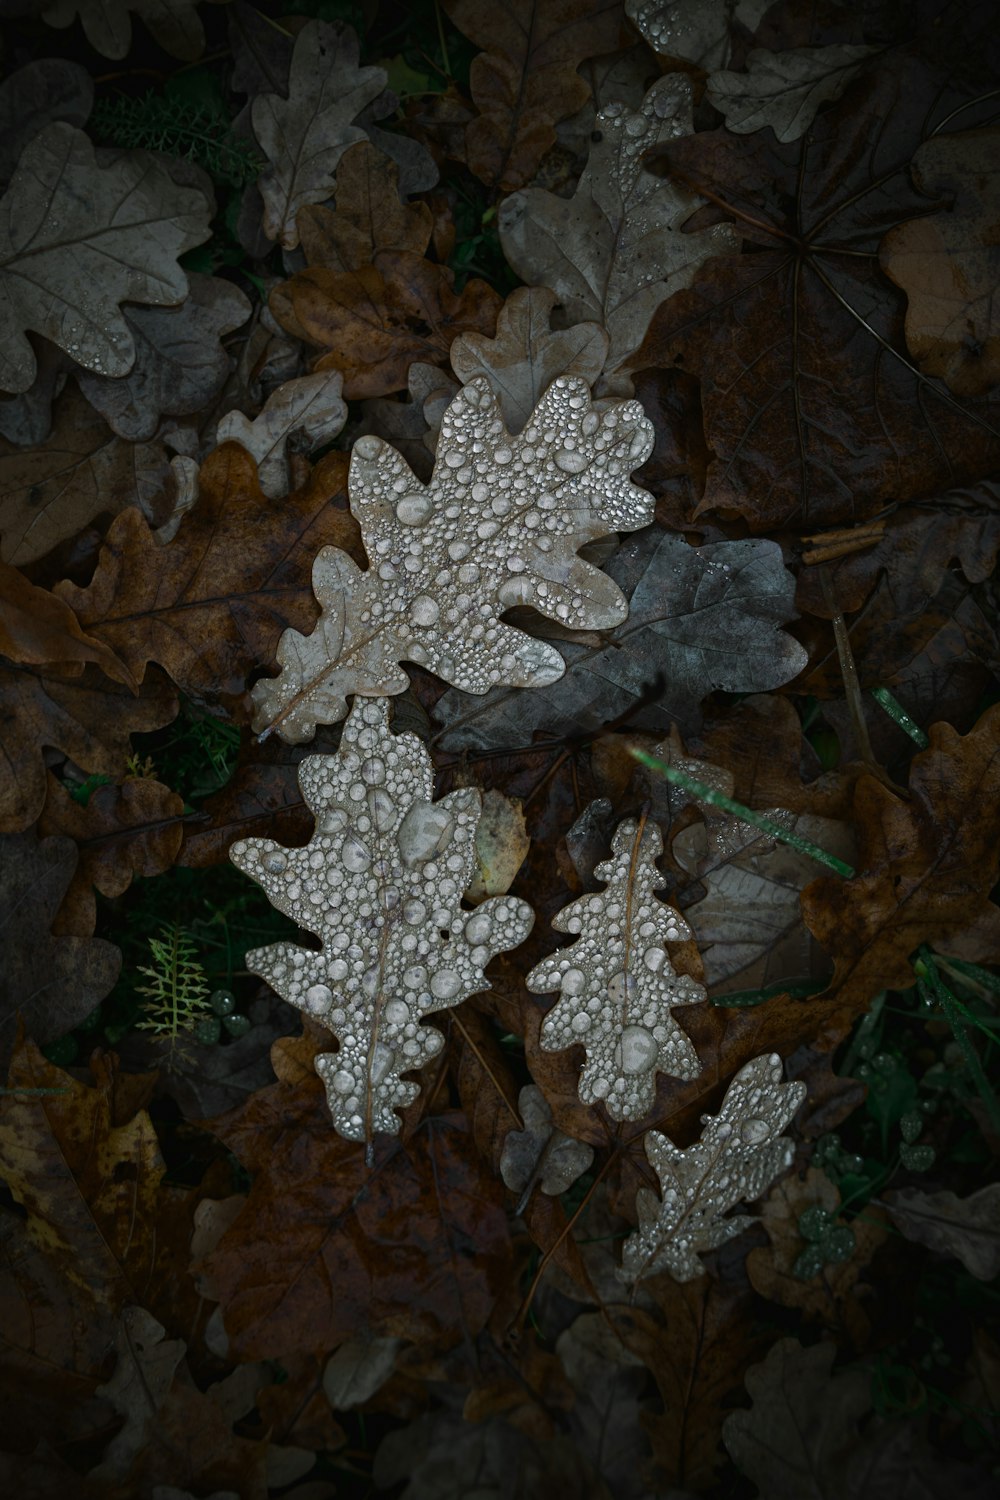 녹색 잎에 흰 눈 조각